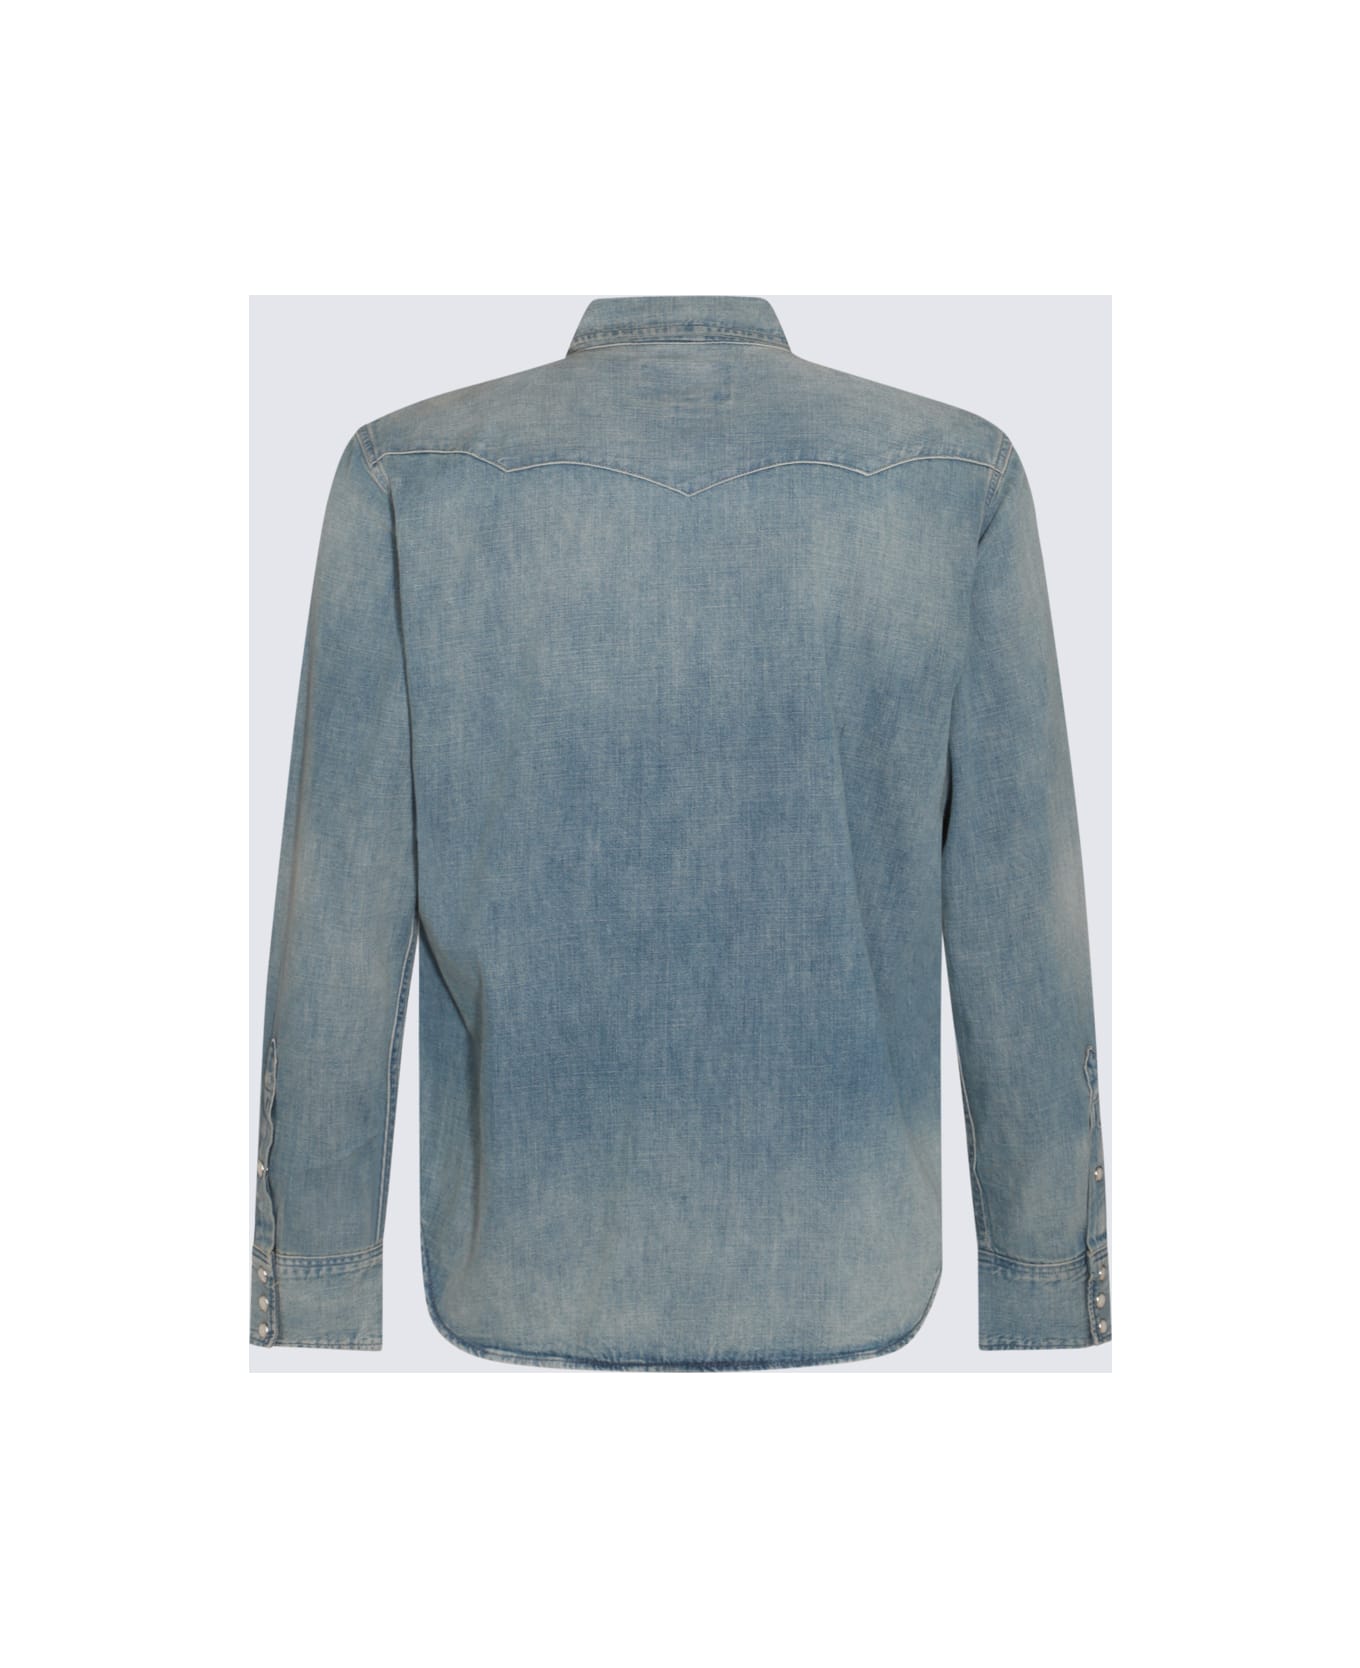 Polo Ralph Lauren Blue Cotton Denim Shirt - RL WESTERN